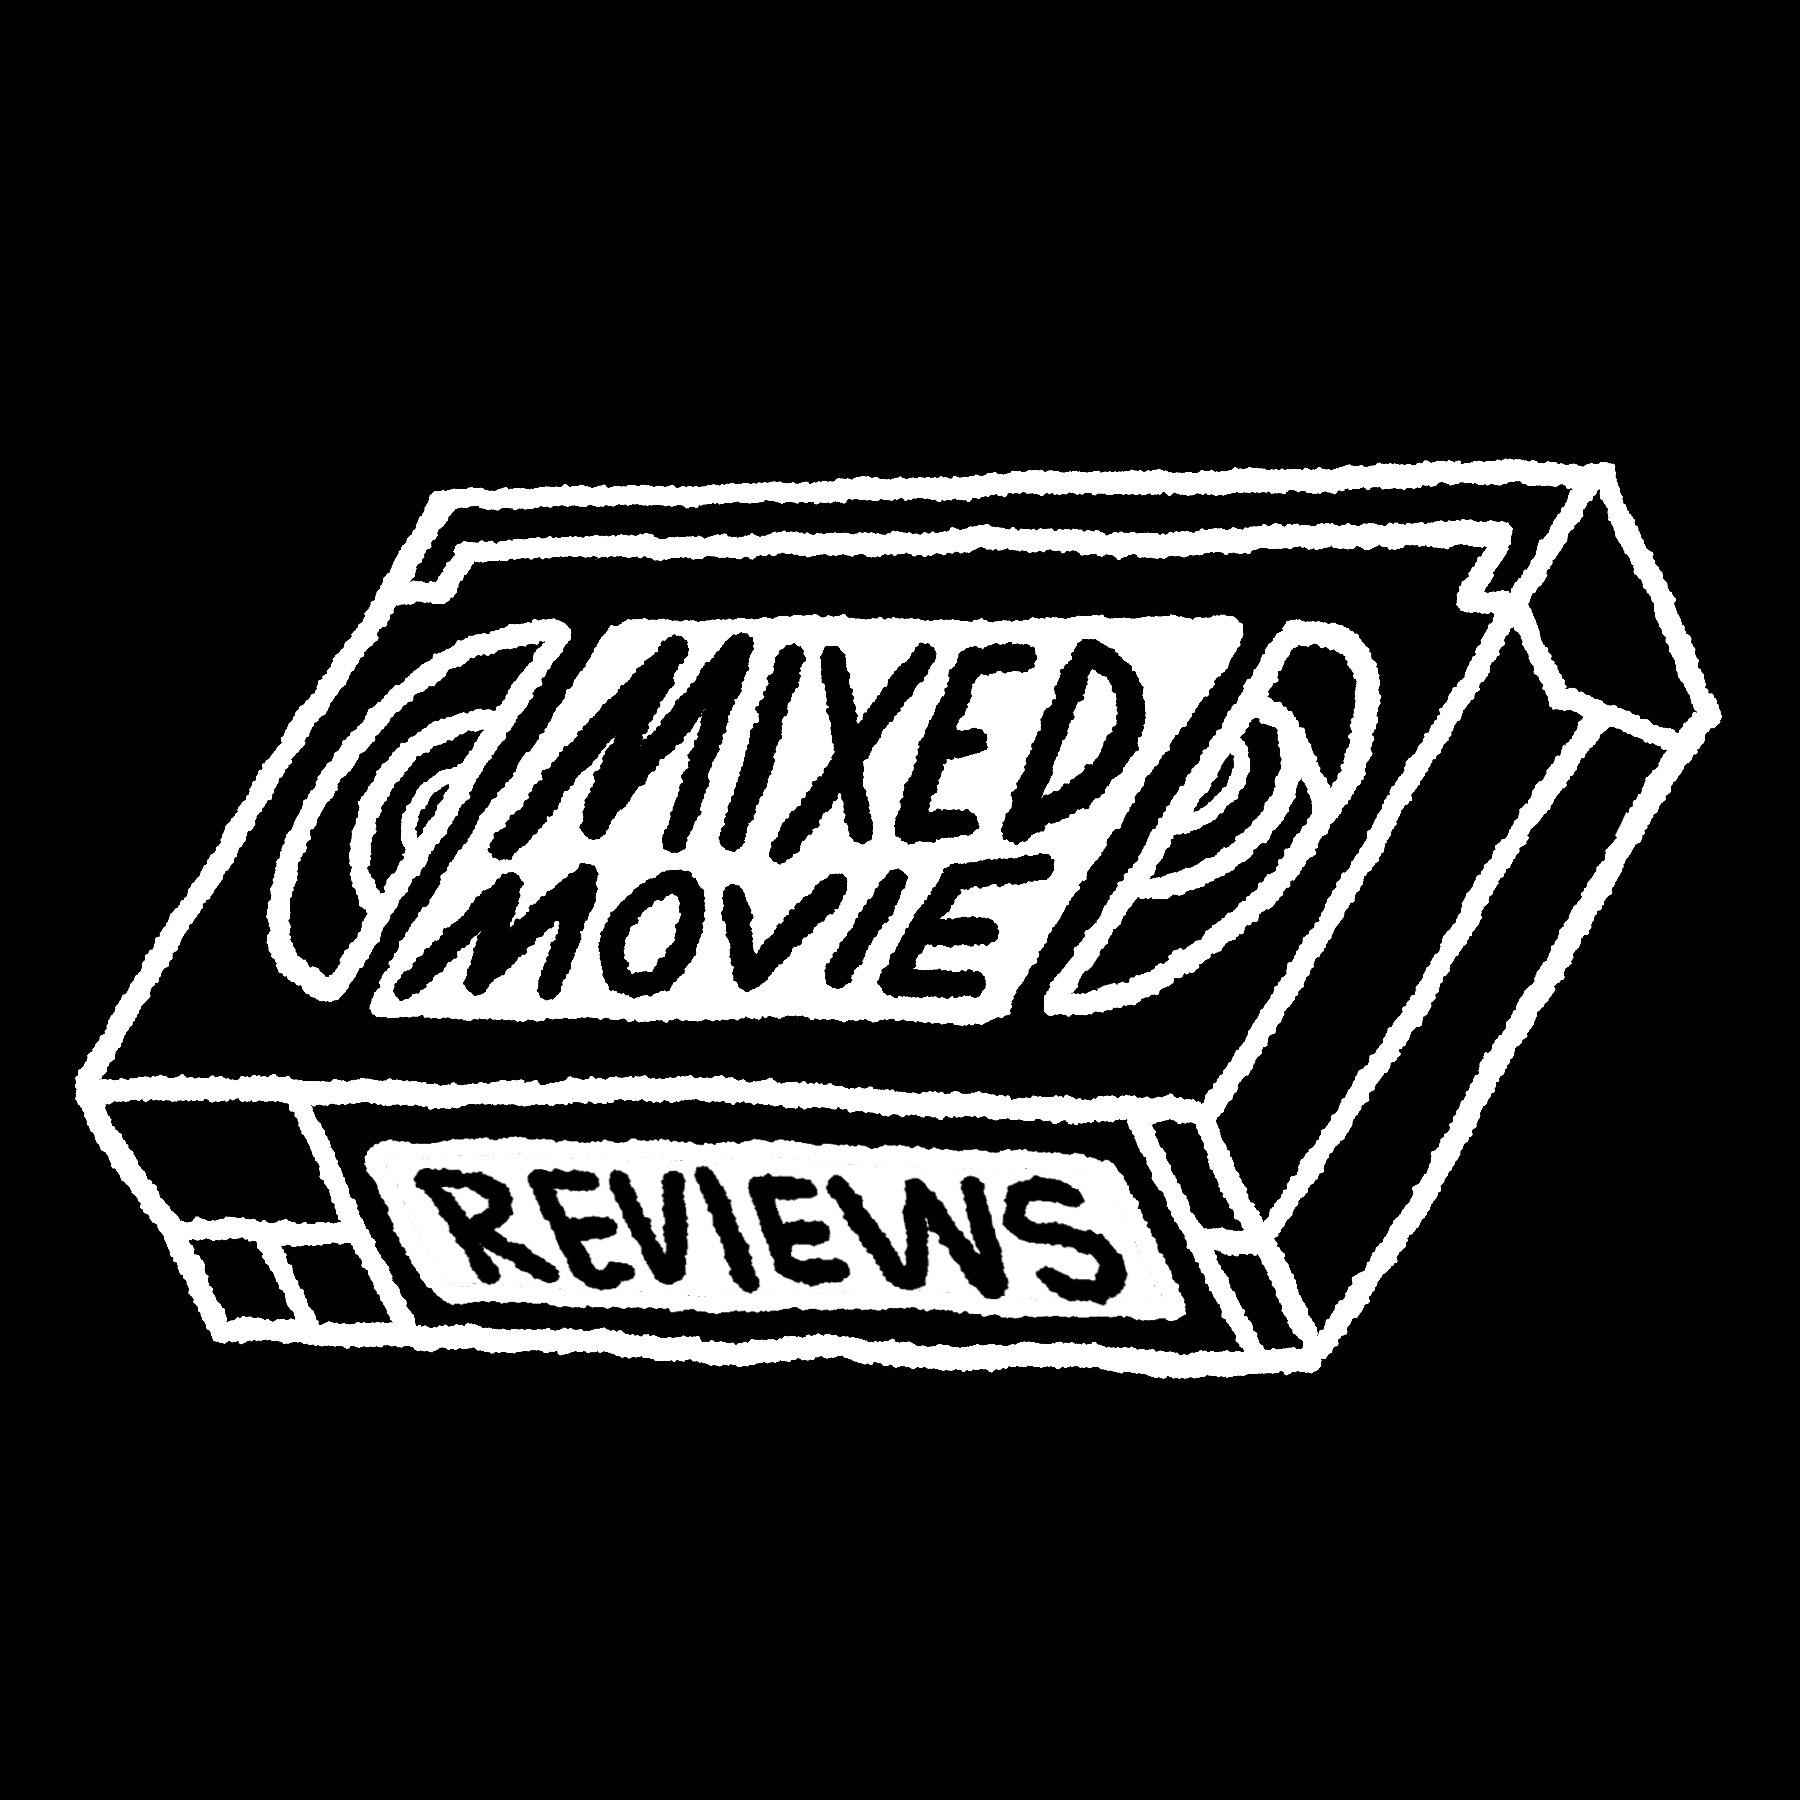 Mixed Movie Reviews